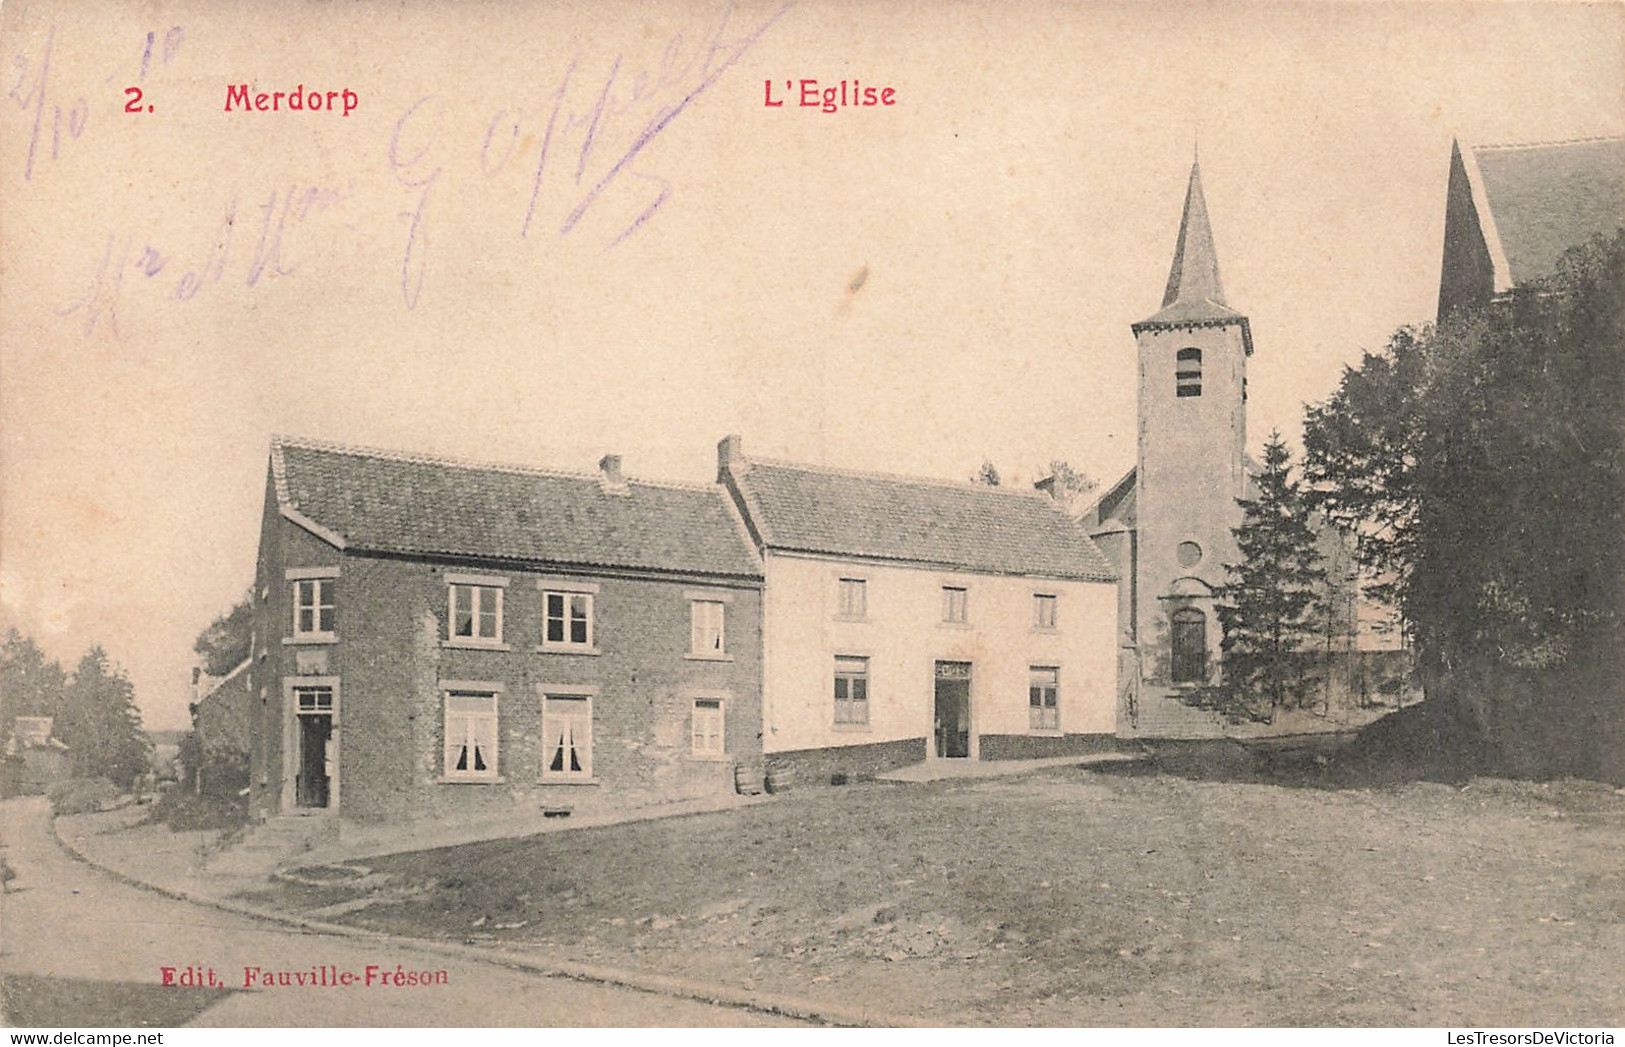 CPA - Belgique - Merdorp - L'Eglise - Edit. Fauville Fréson - Oblitéré Wasseiges 1910 - Clocher - Eglise - Hannut